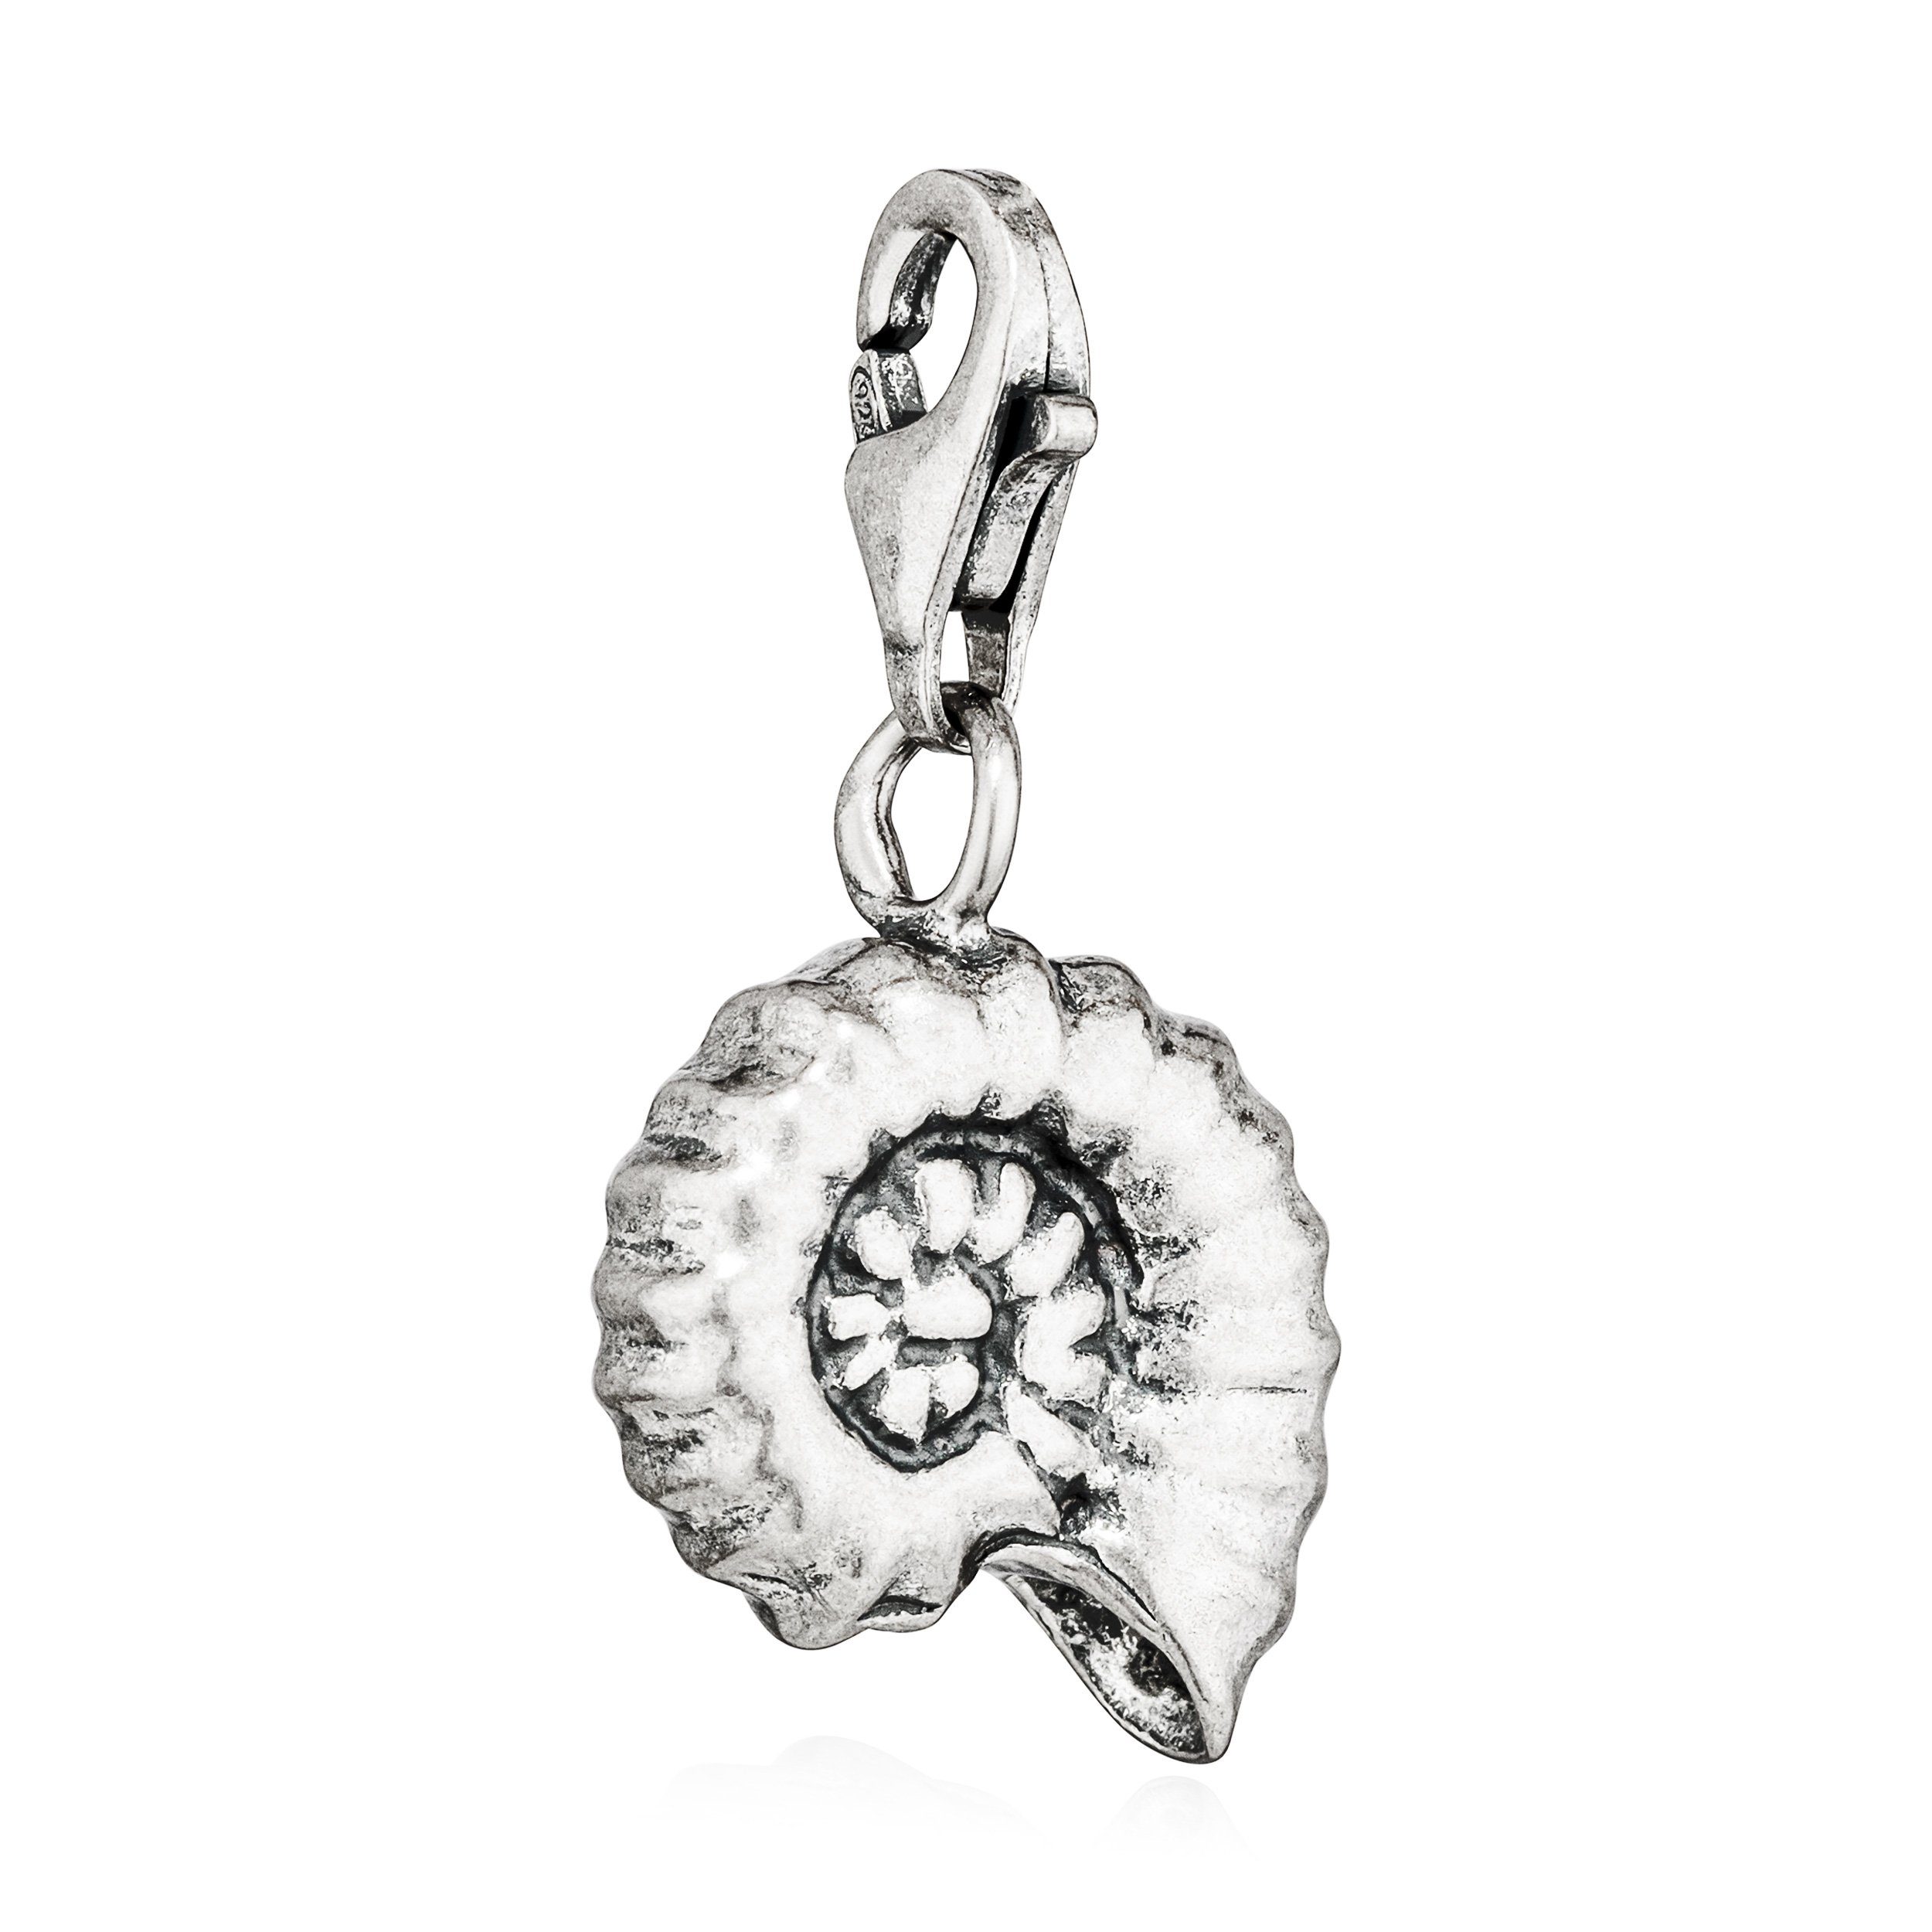 NKlaus Kettenanhänger Charm-Anhänger Fossil Silber Silberanhänger Ammonit 12x13mm antik 925